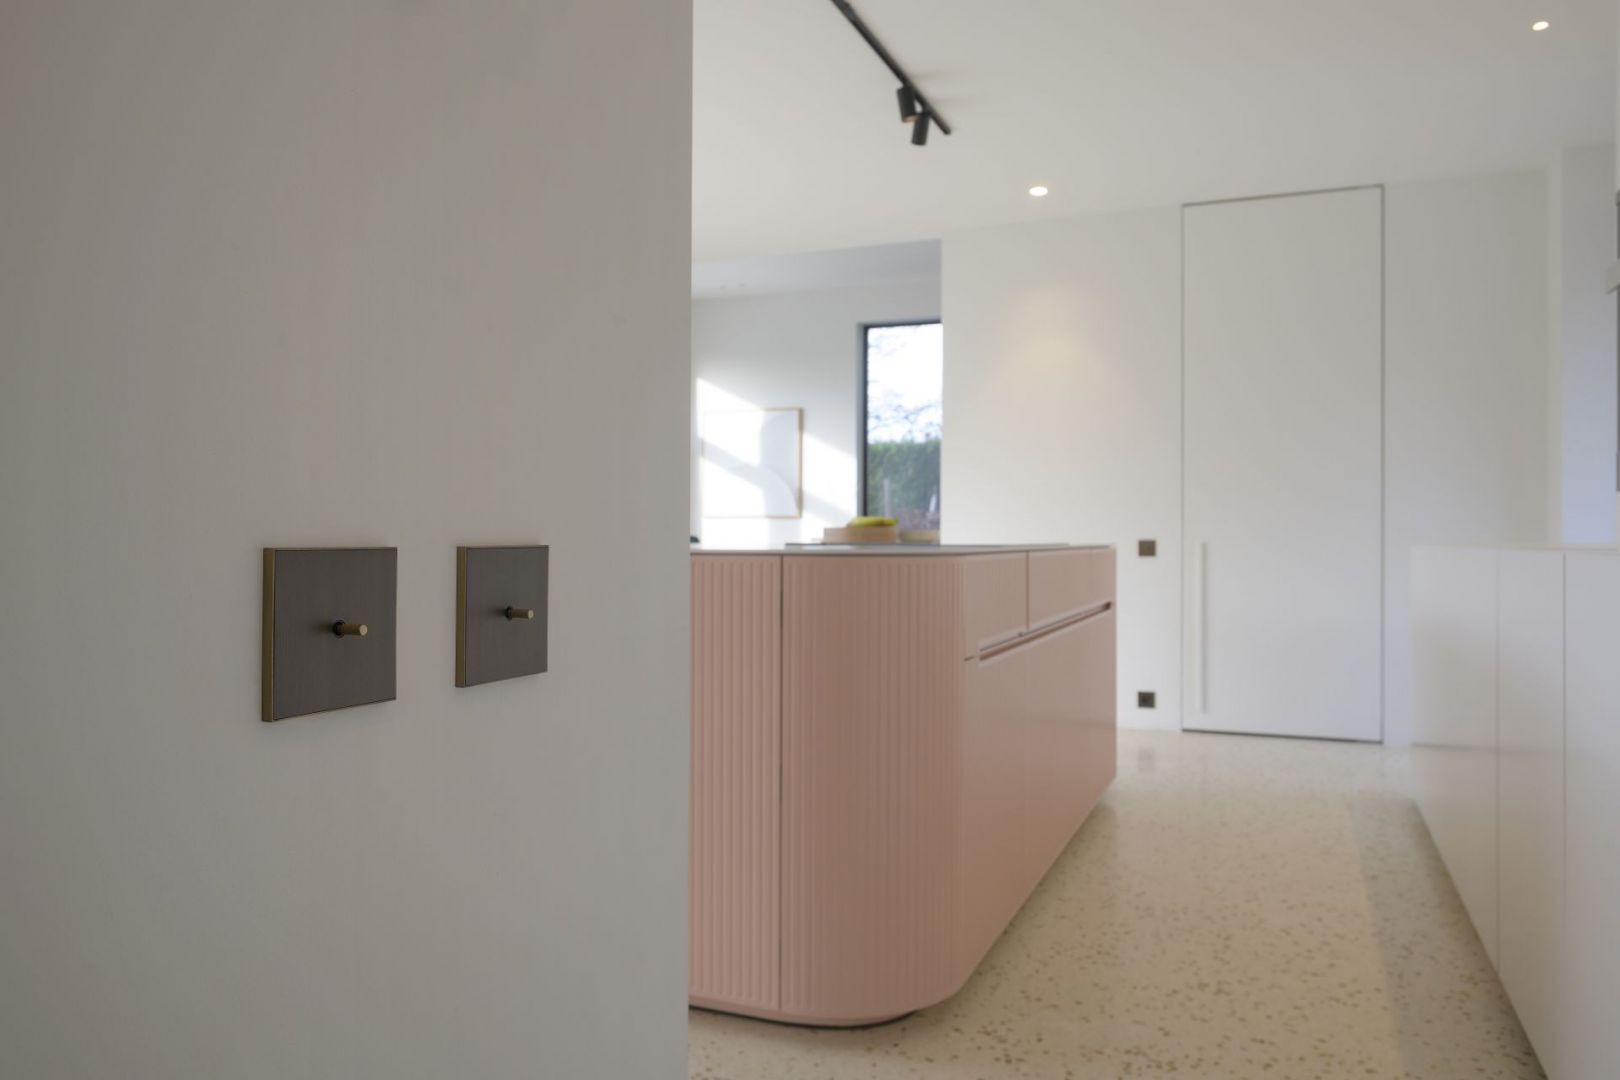 Włączniki Lithoss wyróżnia zawsze ceniony minimalizm, prostota konstrukcji oraz funkcjonalne użytkowanie. 